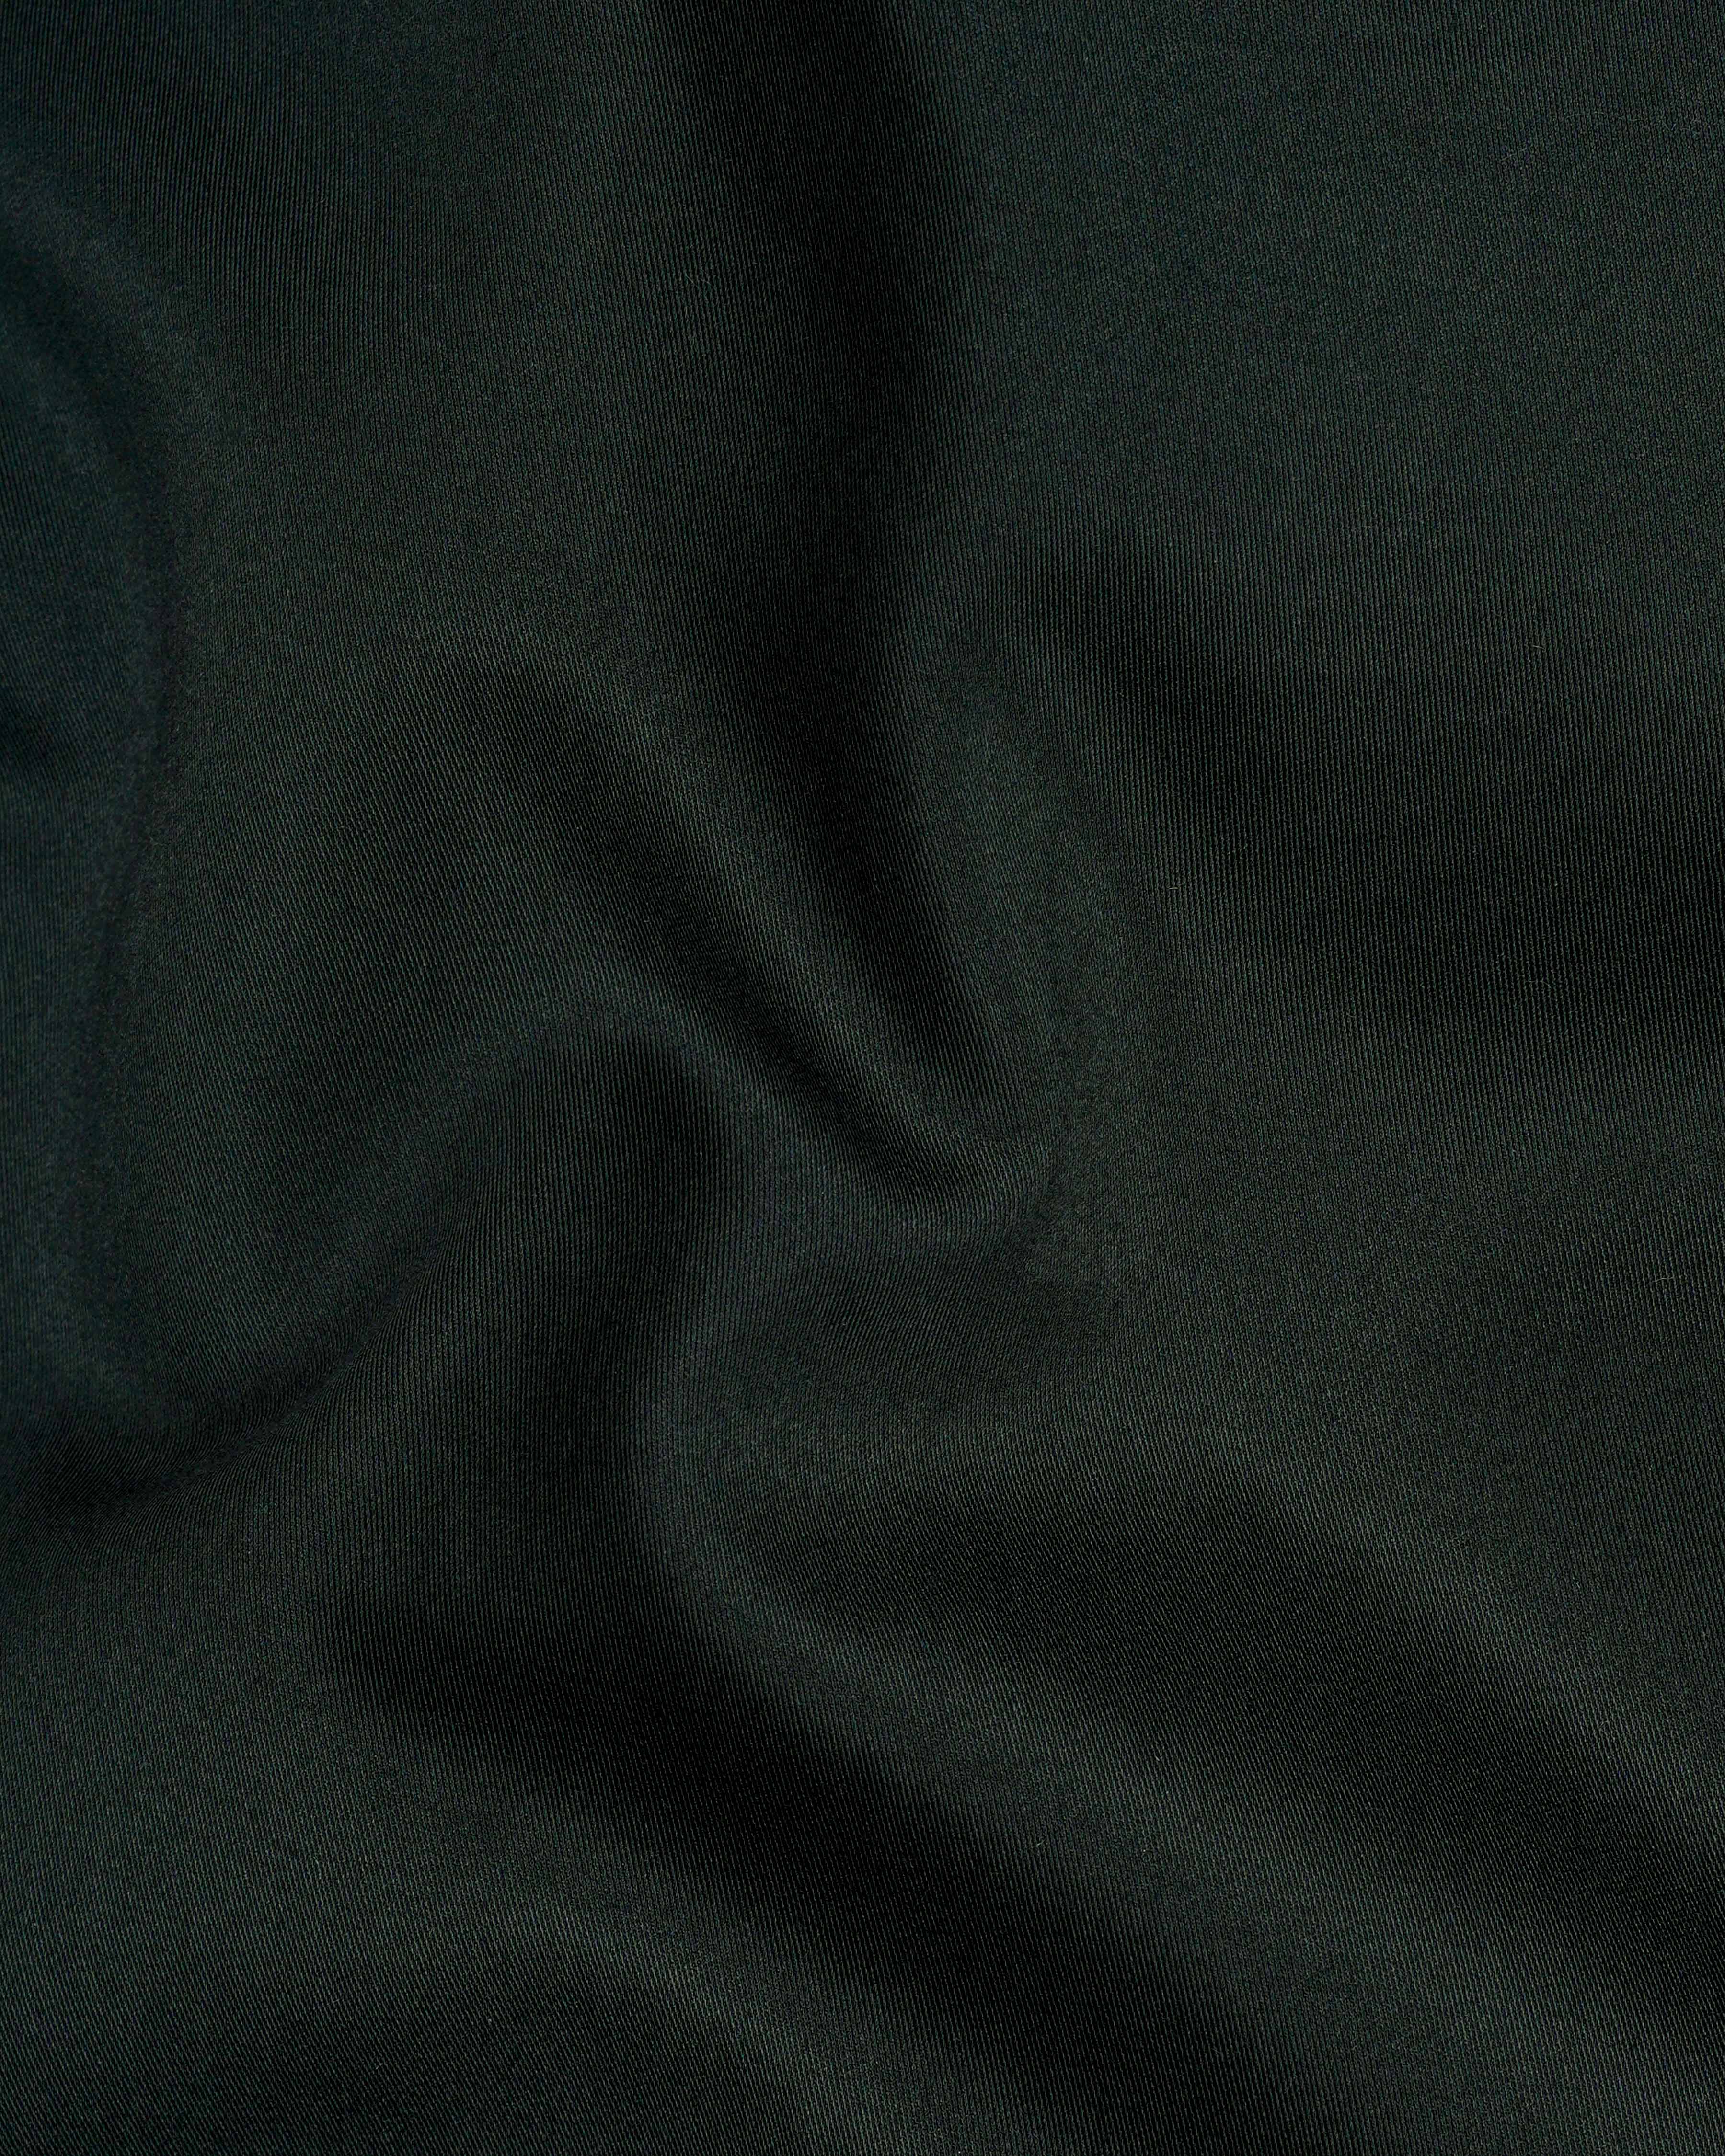 Zeus Dark Green Textured Waistcoat V2075-36, V2075-38, V2075-40, V2075-42, V2075-44, V2075-46, V2075-48, V2075-50, V2075-52, V2075-54, V2075-56, V2075-58, V2075-60